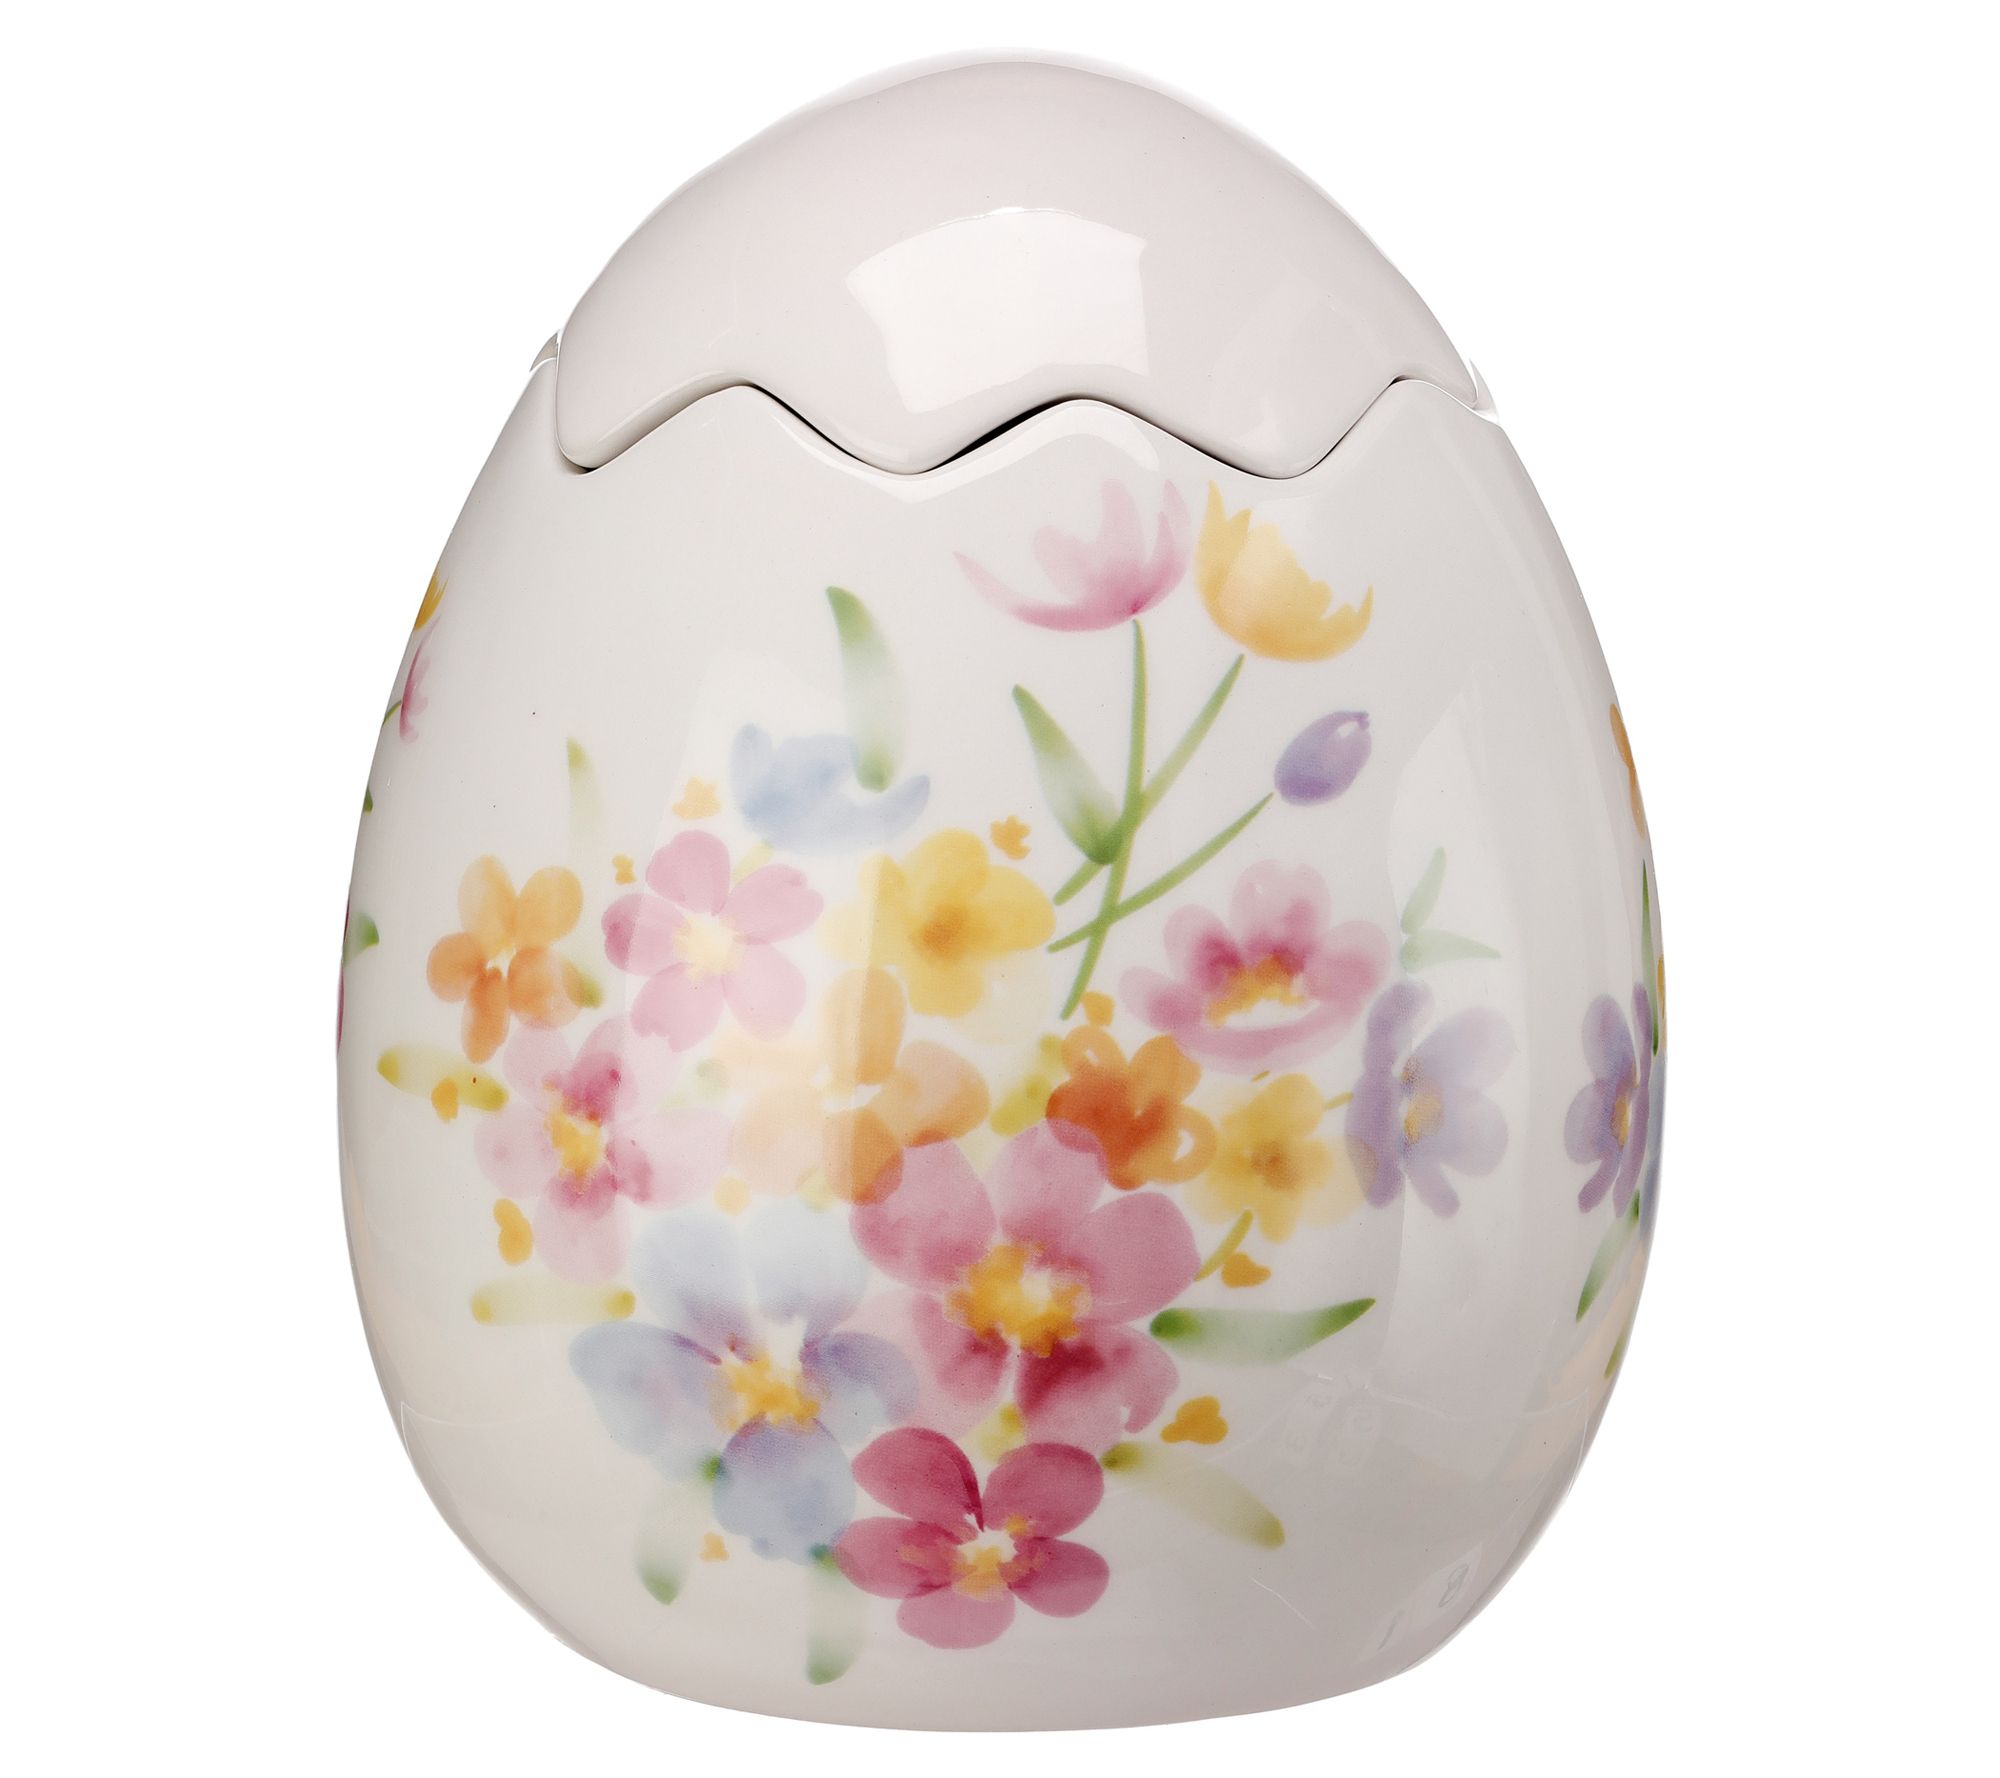 Floral Egg Vase With Lid 7.75